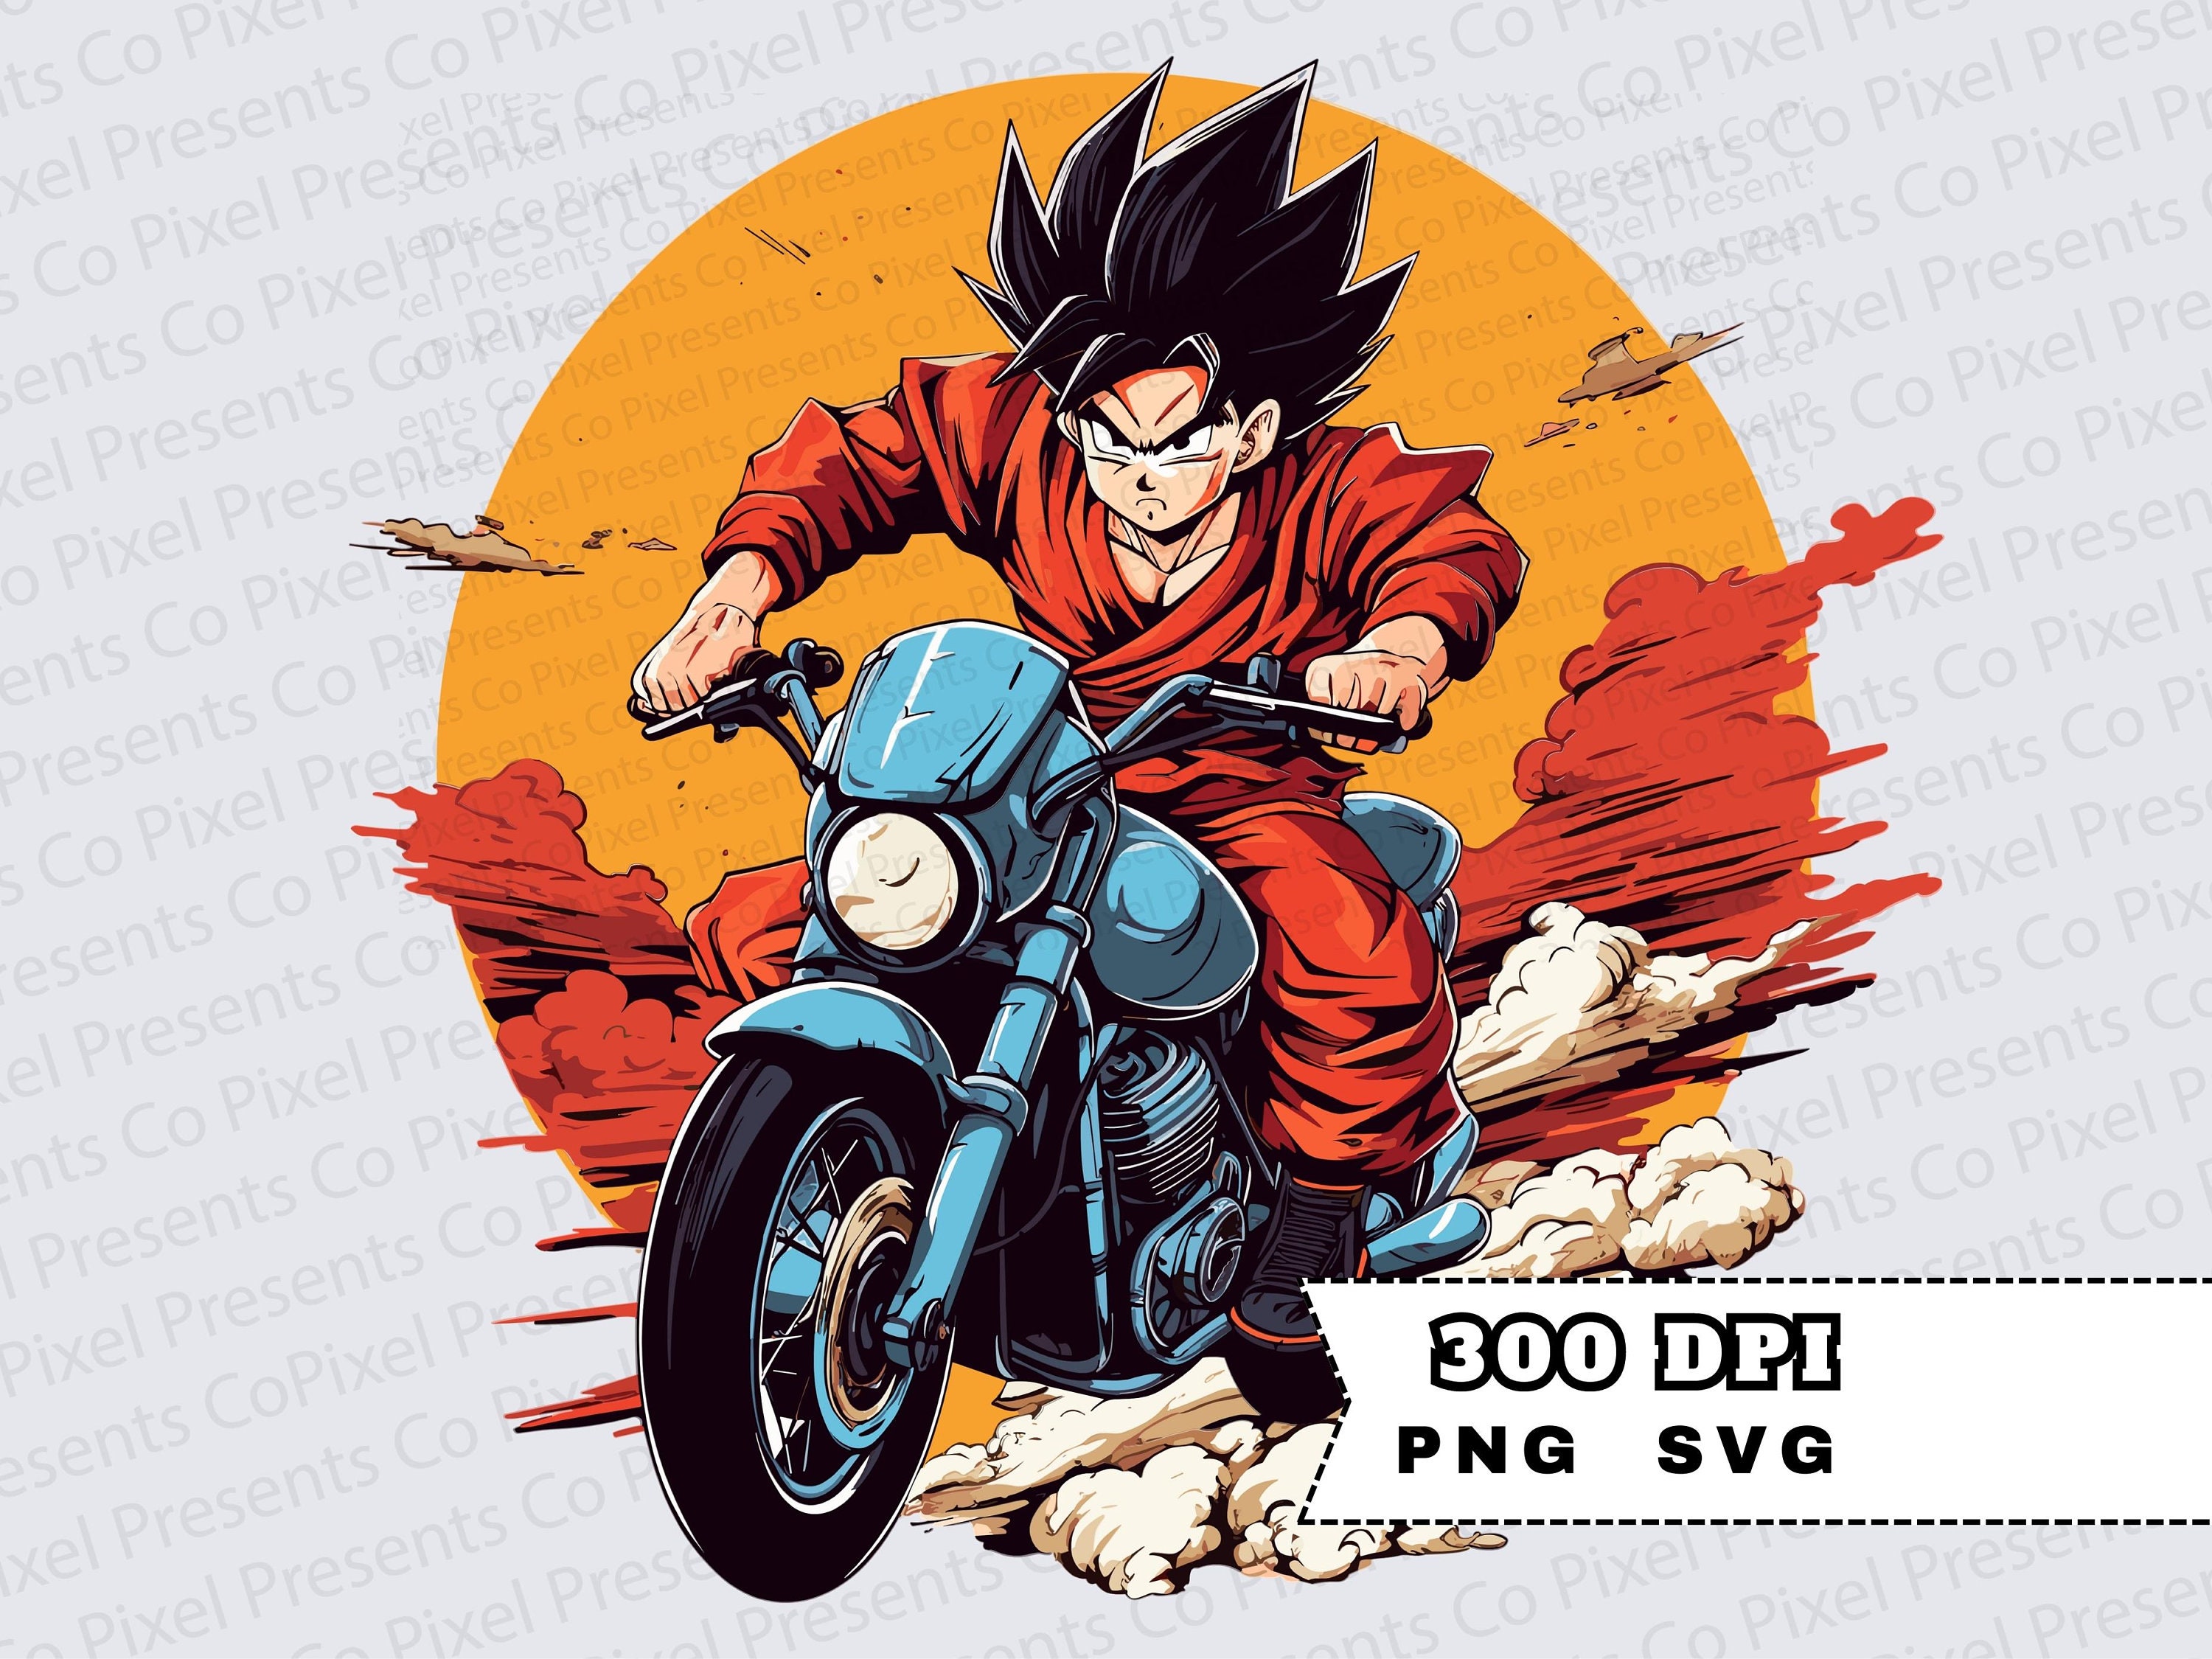 Dragon Ball Z Goku & Goten Enamel Pin - BoxLunch Exclusive, BoxLunch